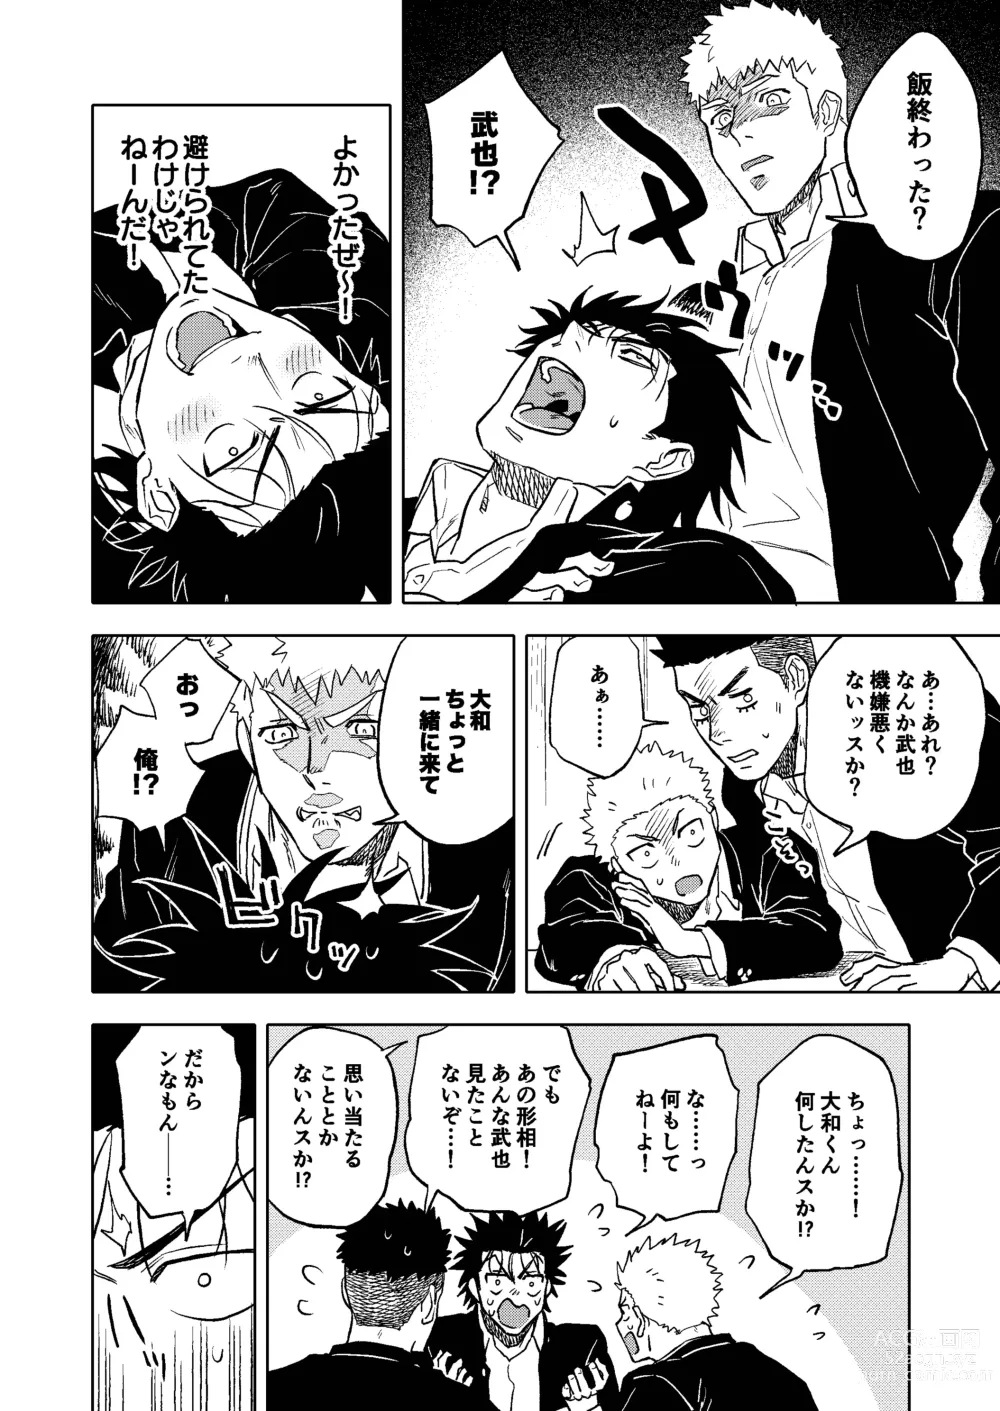 Page 7 of doujinshi Dainarishounari 2